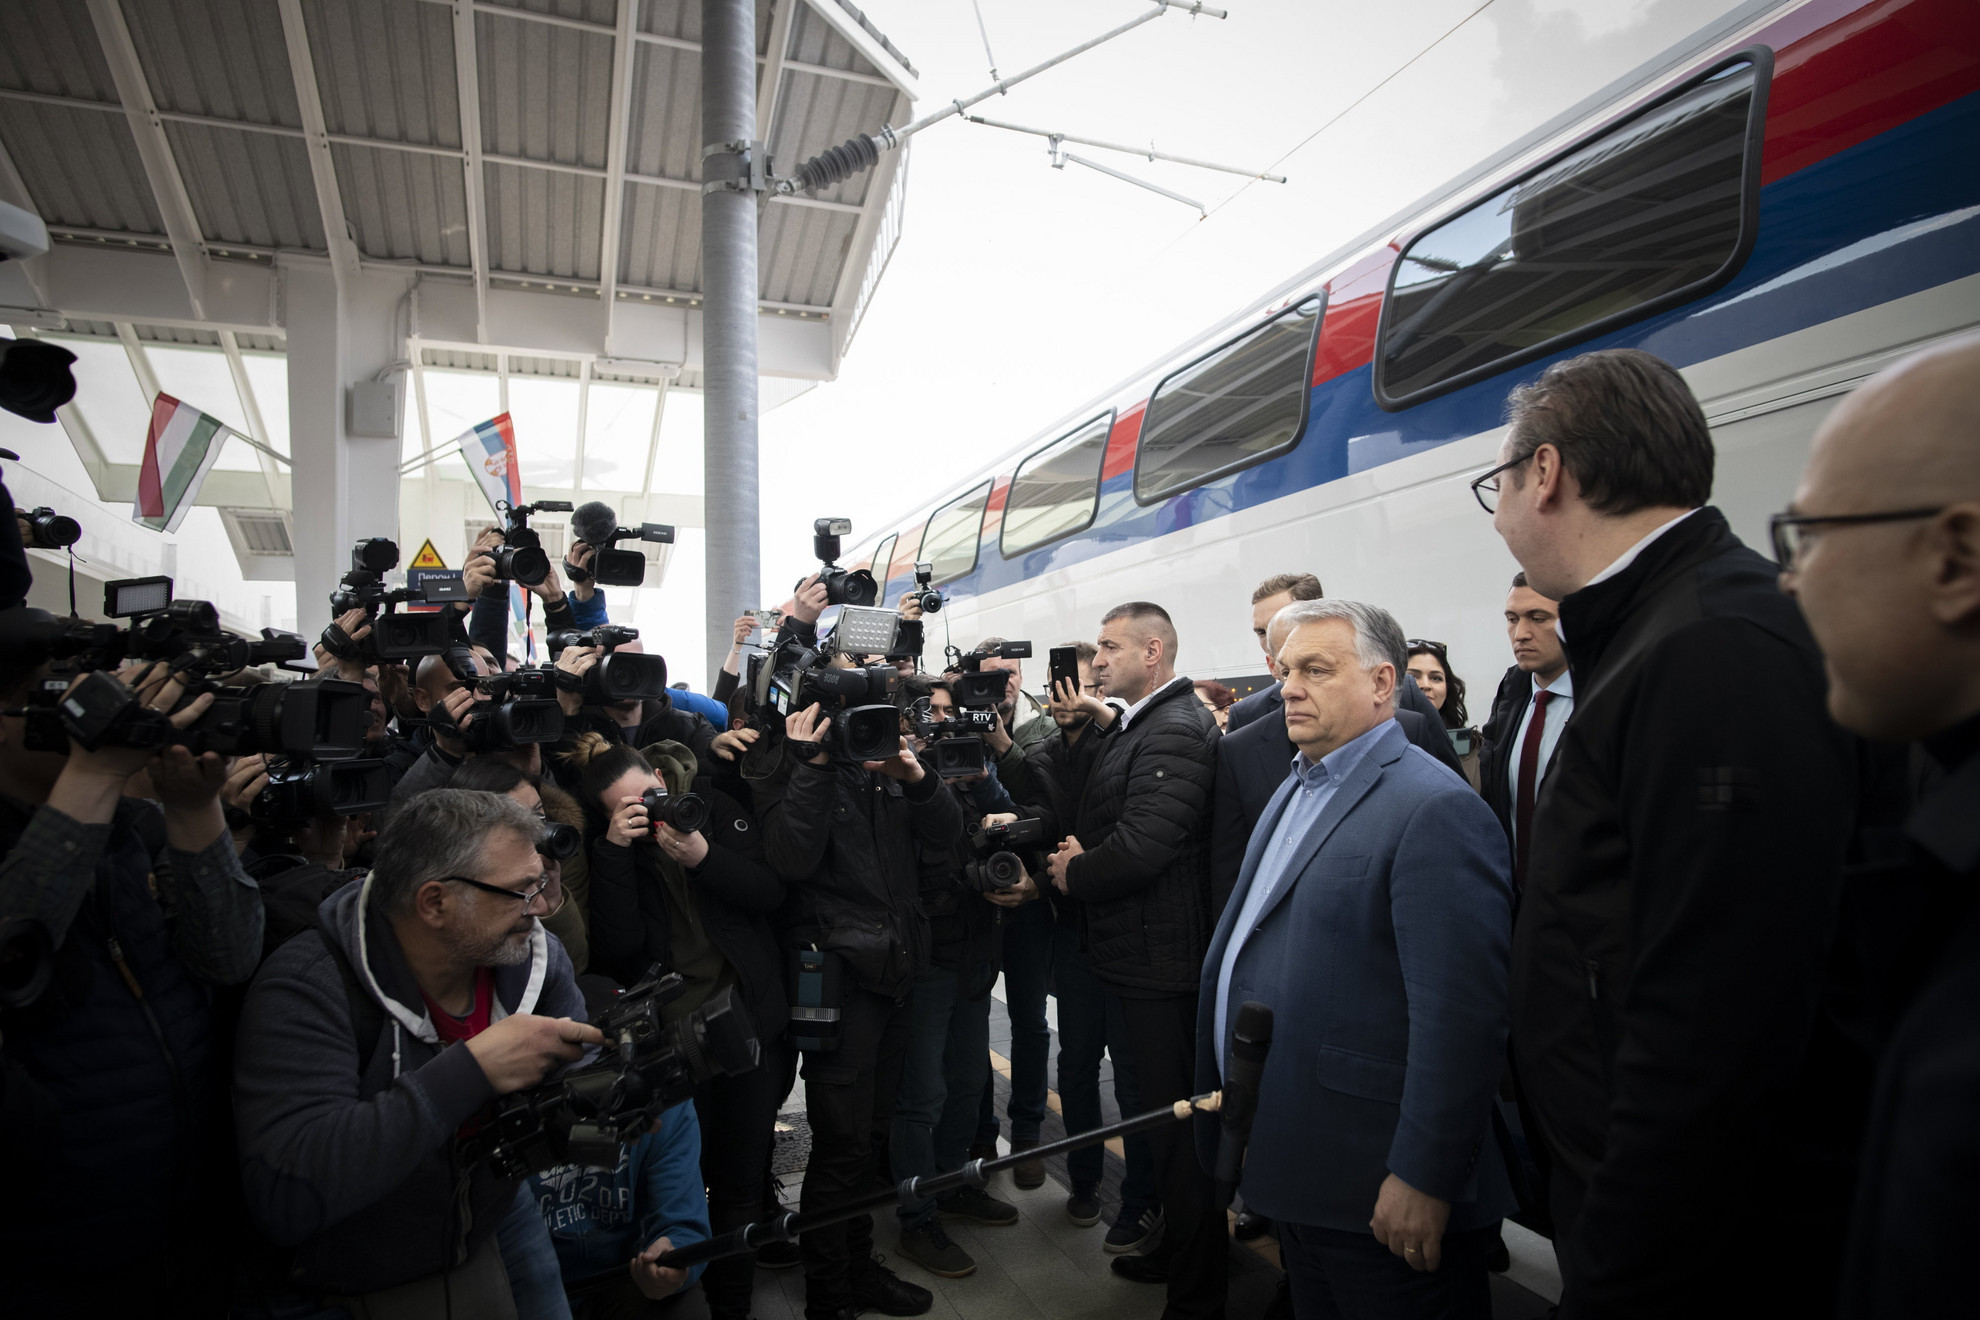 A Miniszterelnöki Sajtóiroda által közreadott képen Orbán Viktor miniszterelnök (j3) és Alekszandar Vucic szerb államfő (j2) nyilatkozik a sajtónak a Budapest-Belgrád vasútvonal Belgrád és Újvidék közötti szakaszának felavatásán a vajdasági Újvidéken